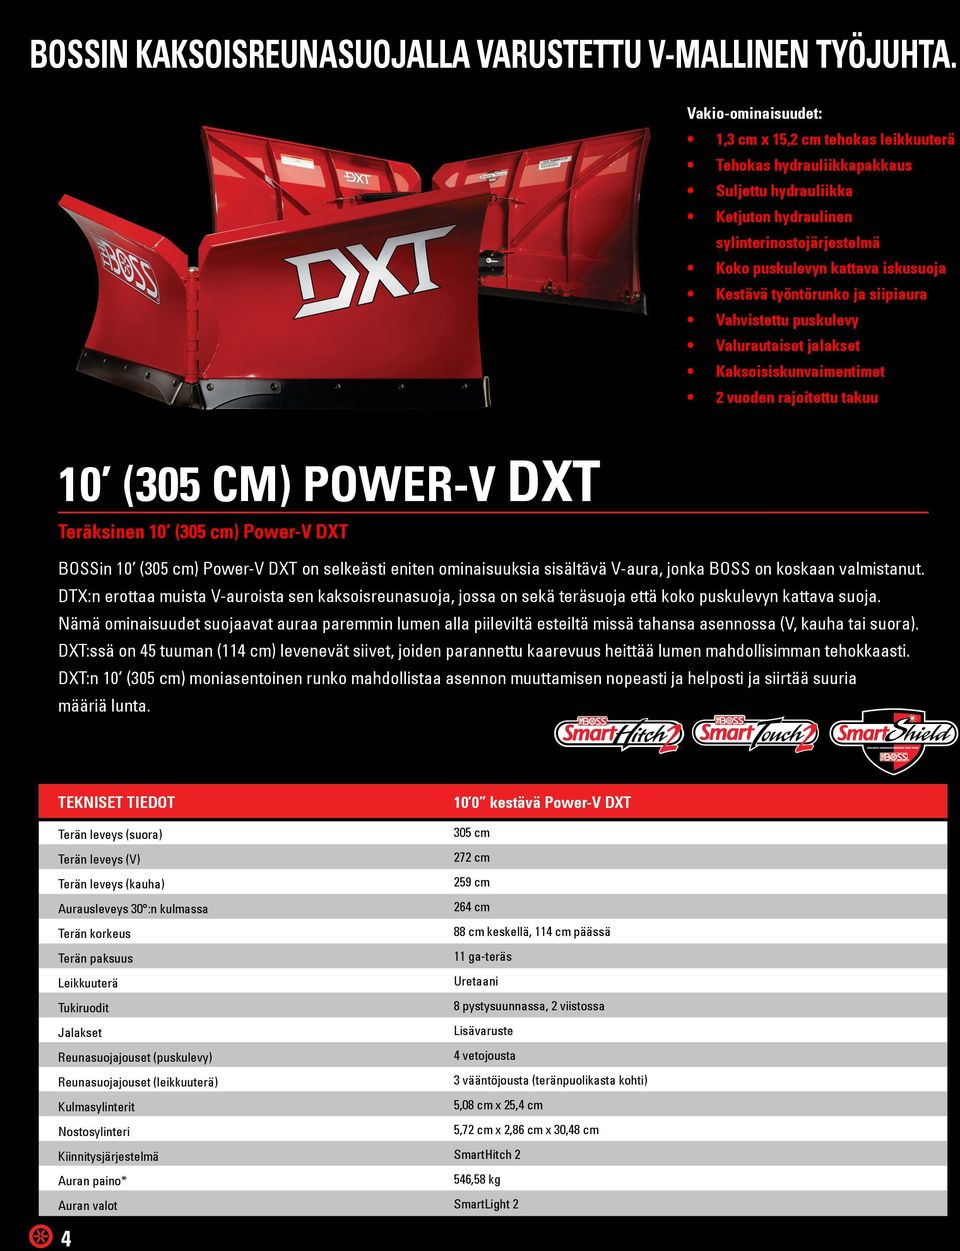 siipiaura Vahvistettu puskulevy Valurautaiset jalakset Kaksoisiskunvaimentimet 2 vuoden rajoitettu takuu 10 (305 CM) POWER-V DXT Teräksinen 10 (305 cm) Power-V DXT BOSSin 10 (305 cm) Power-V DXT on